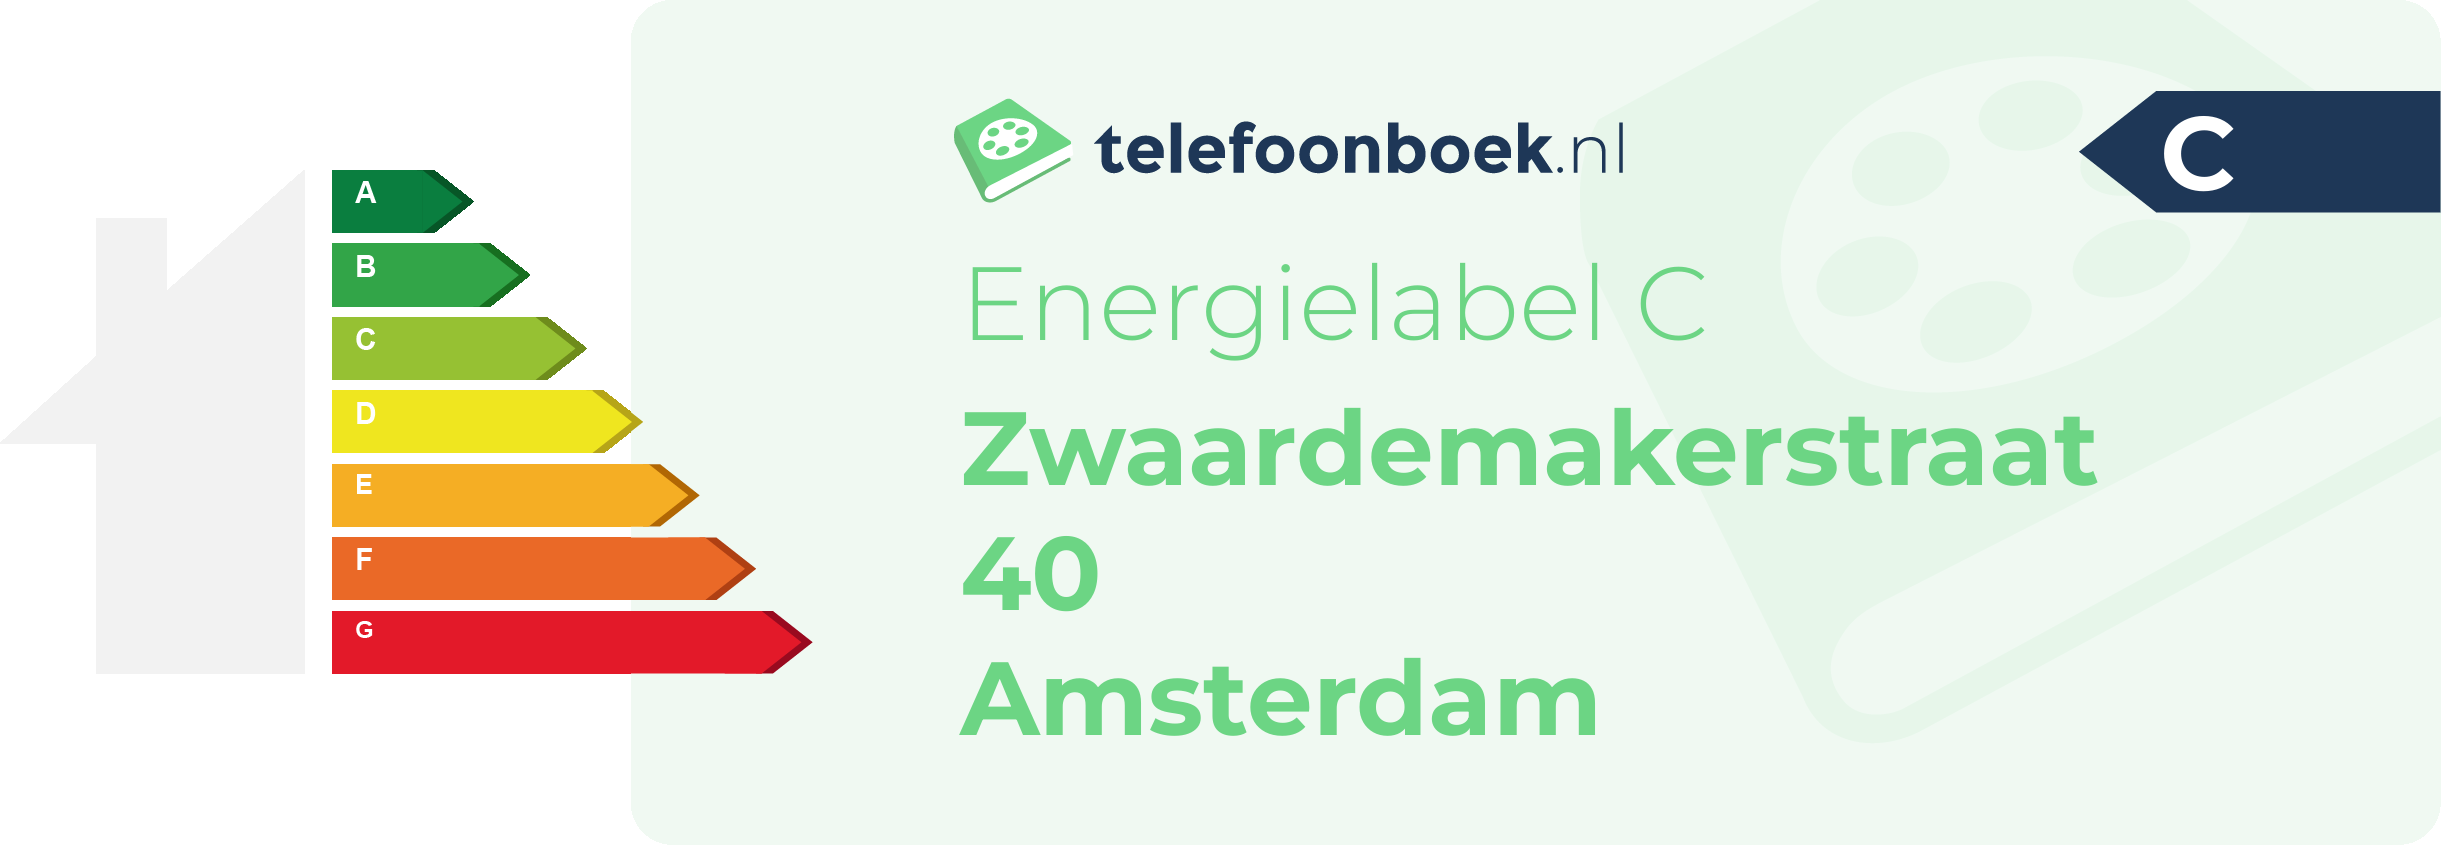 Energielabel Zwaardemakerstraat 40 Amsterdam